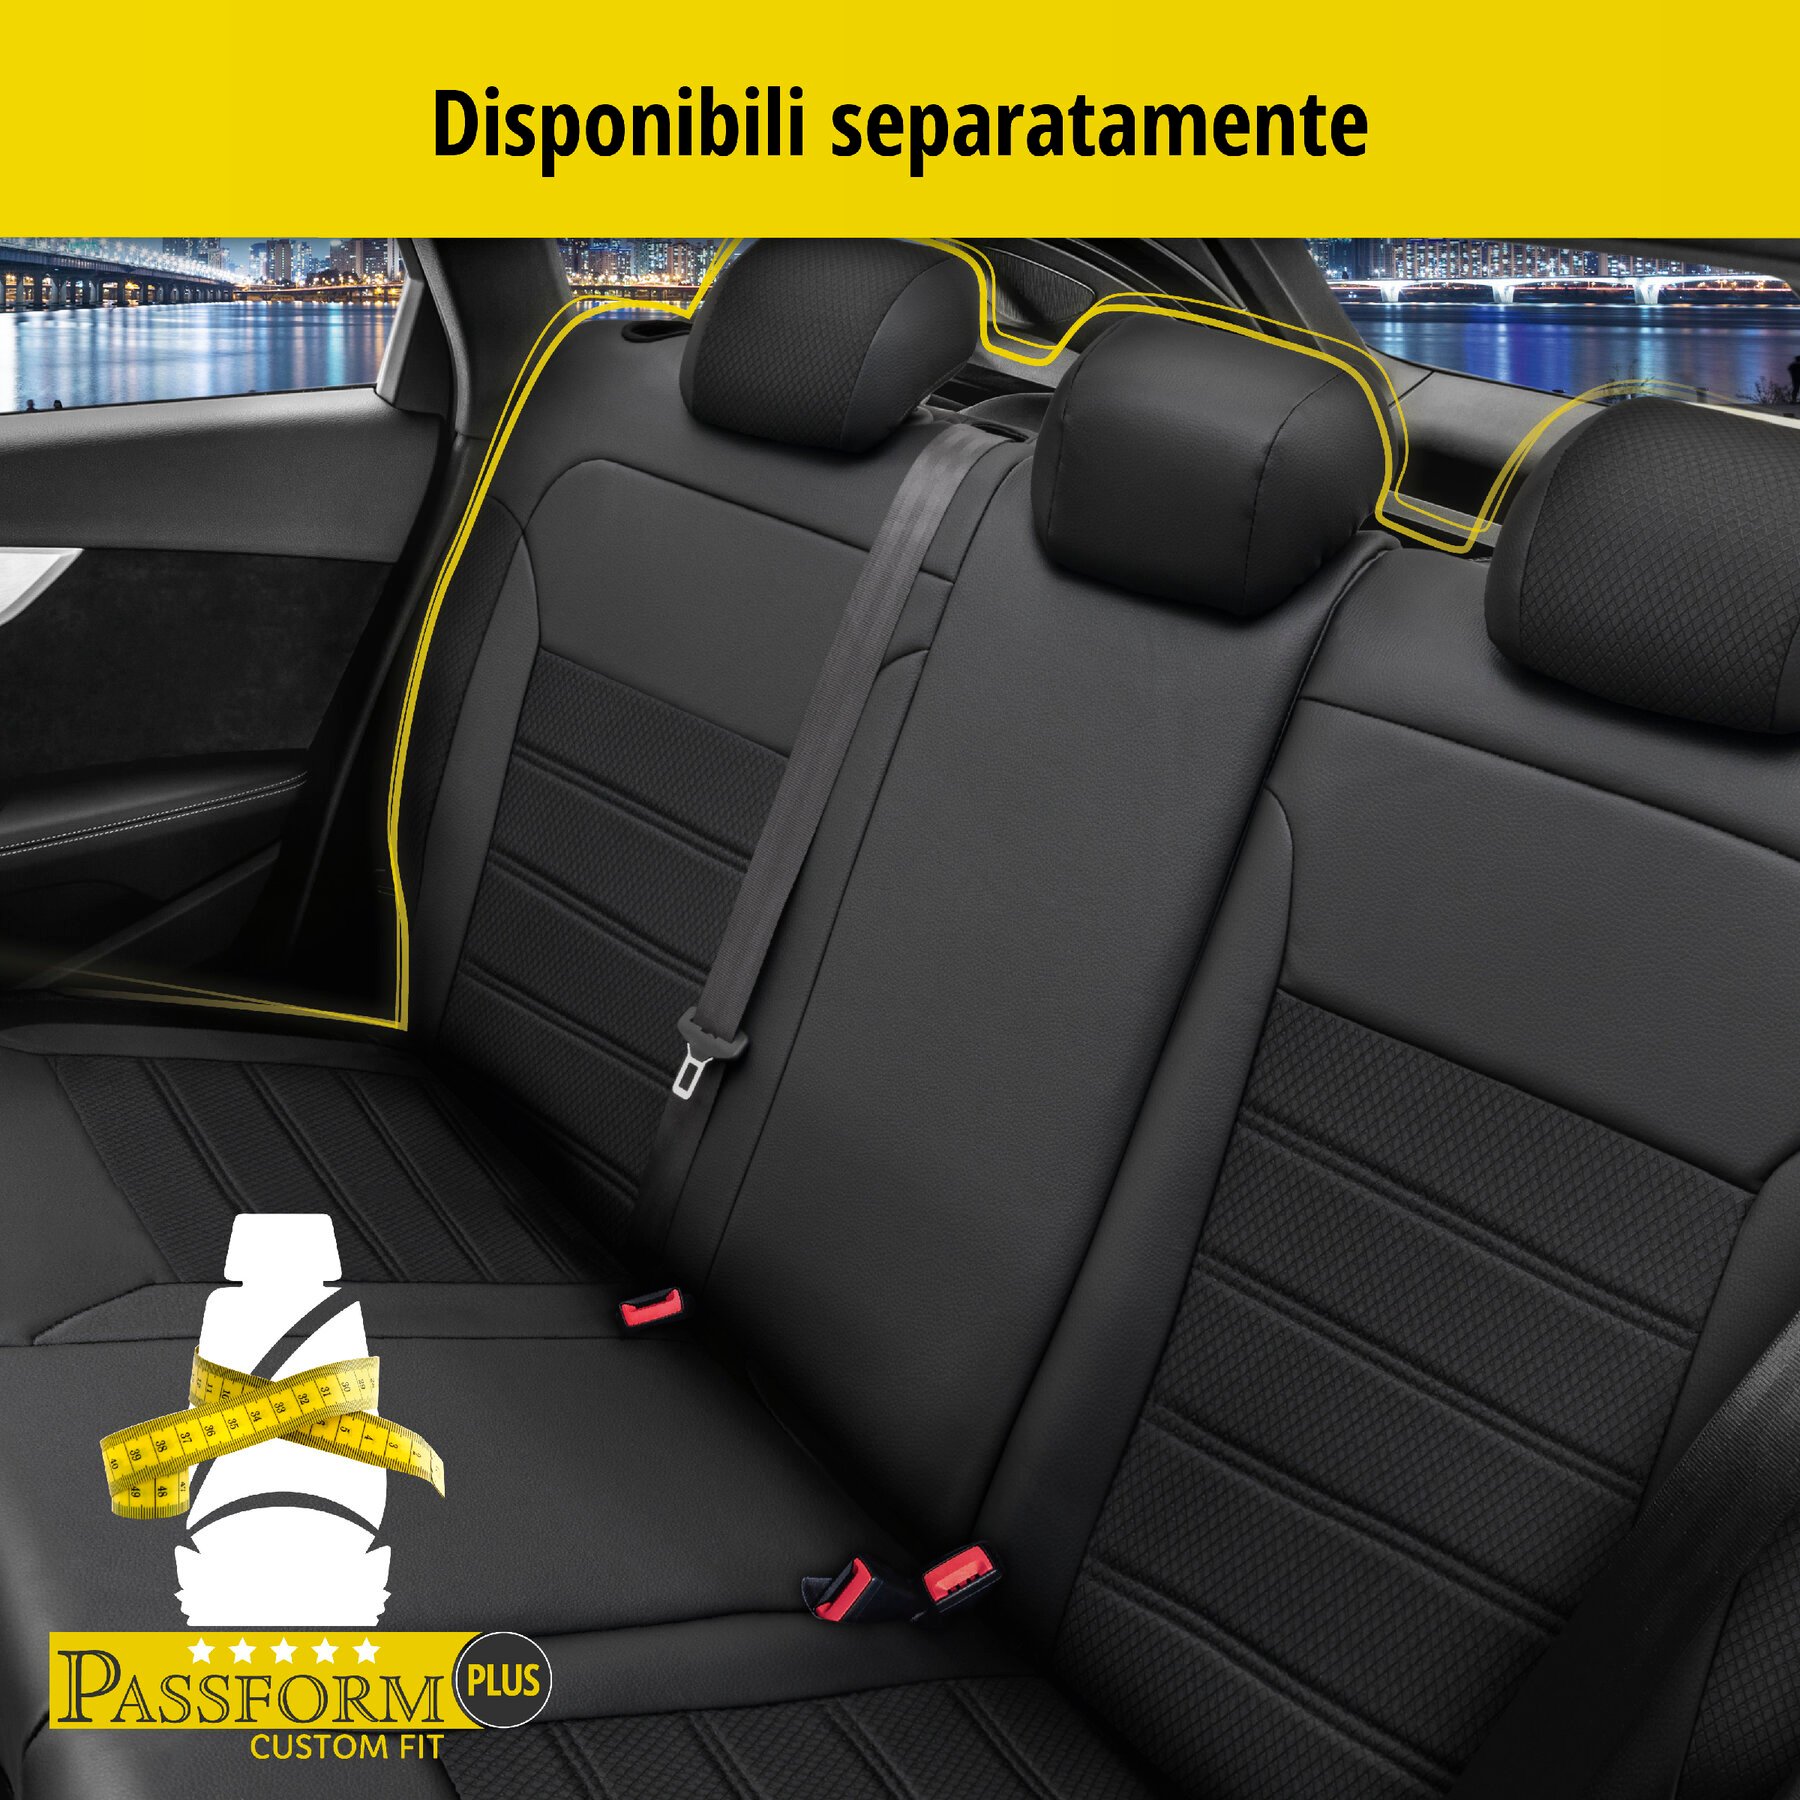 Coprisedili Aversa per Opel Corsa E (X15) 09/2014-Oggi, 2 coprisedili per sedili normali